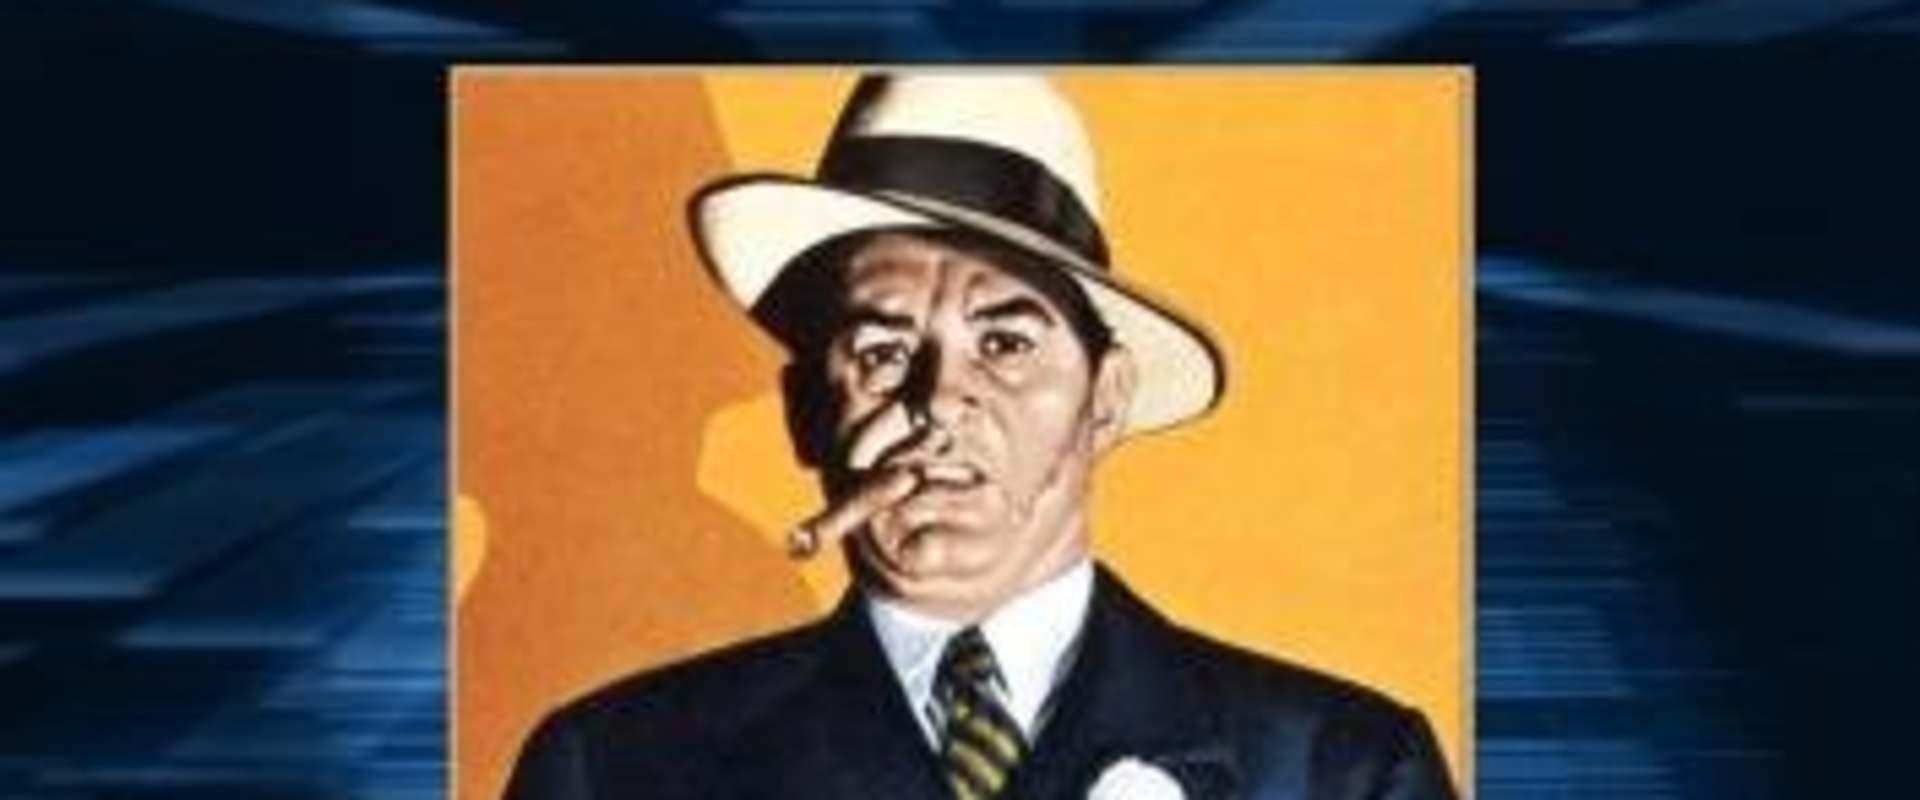 Al Capone background 1